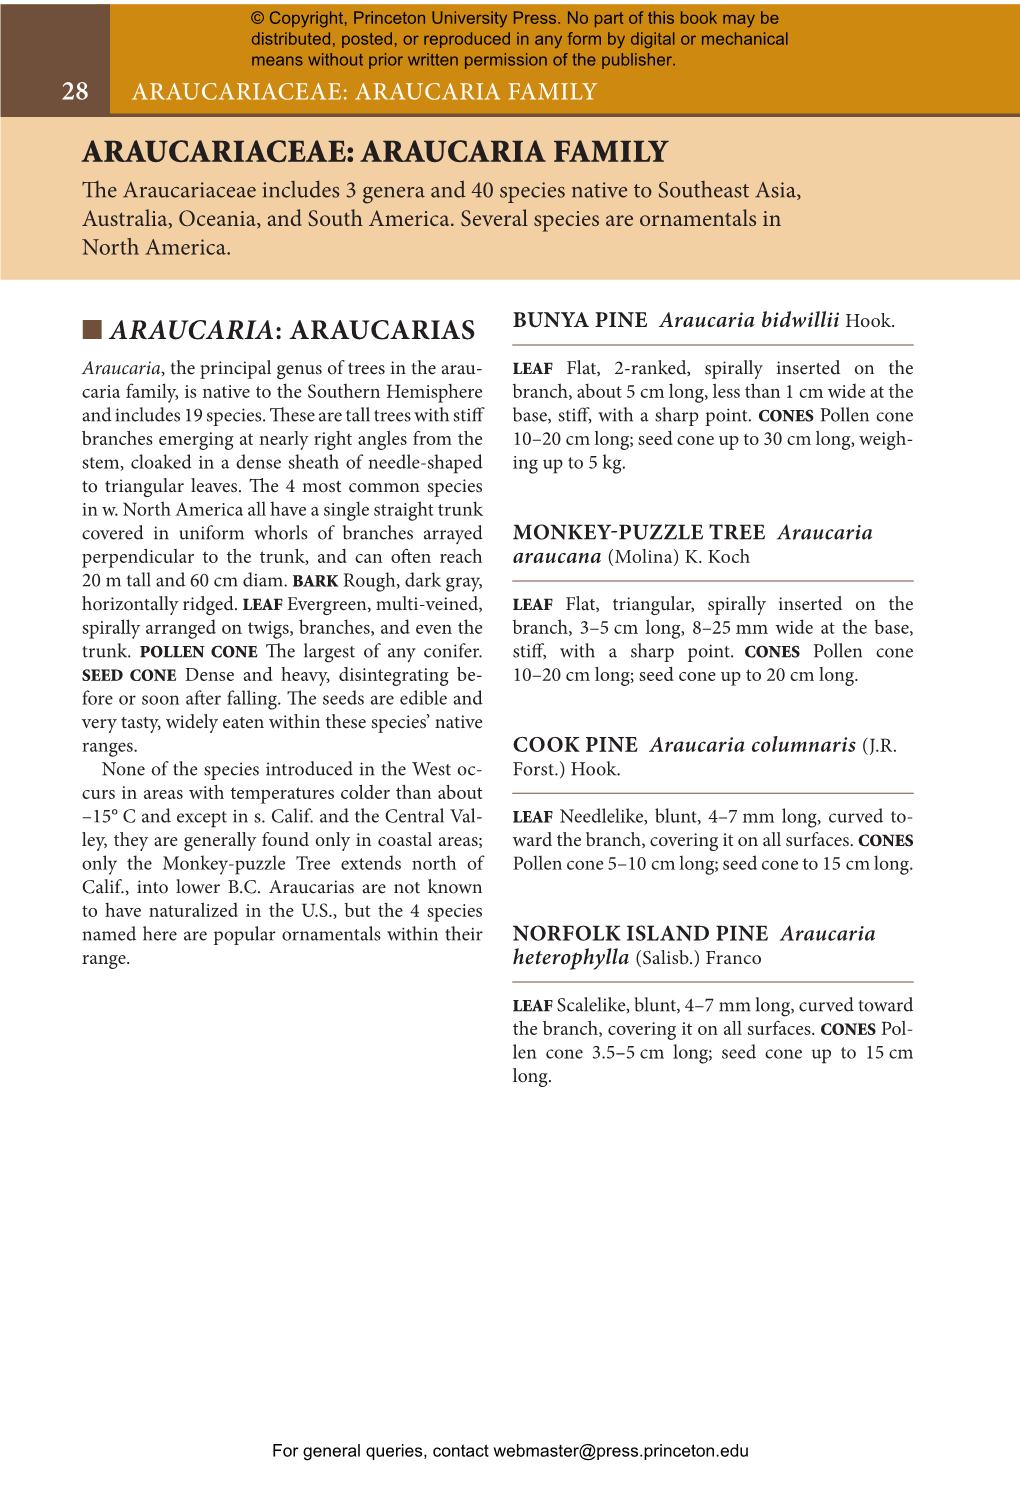 Araucariaceae: Araucaria Family